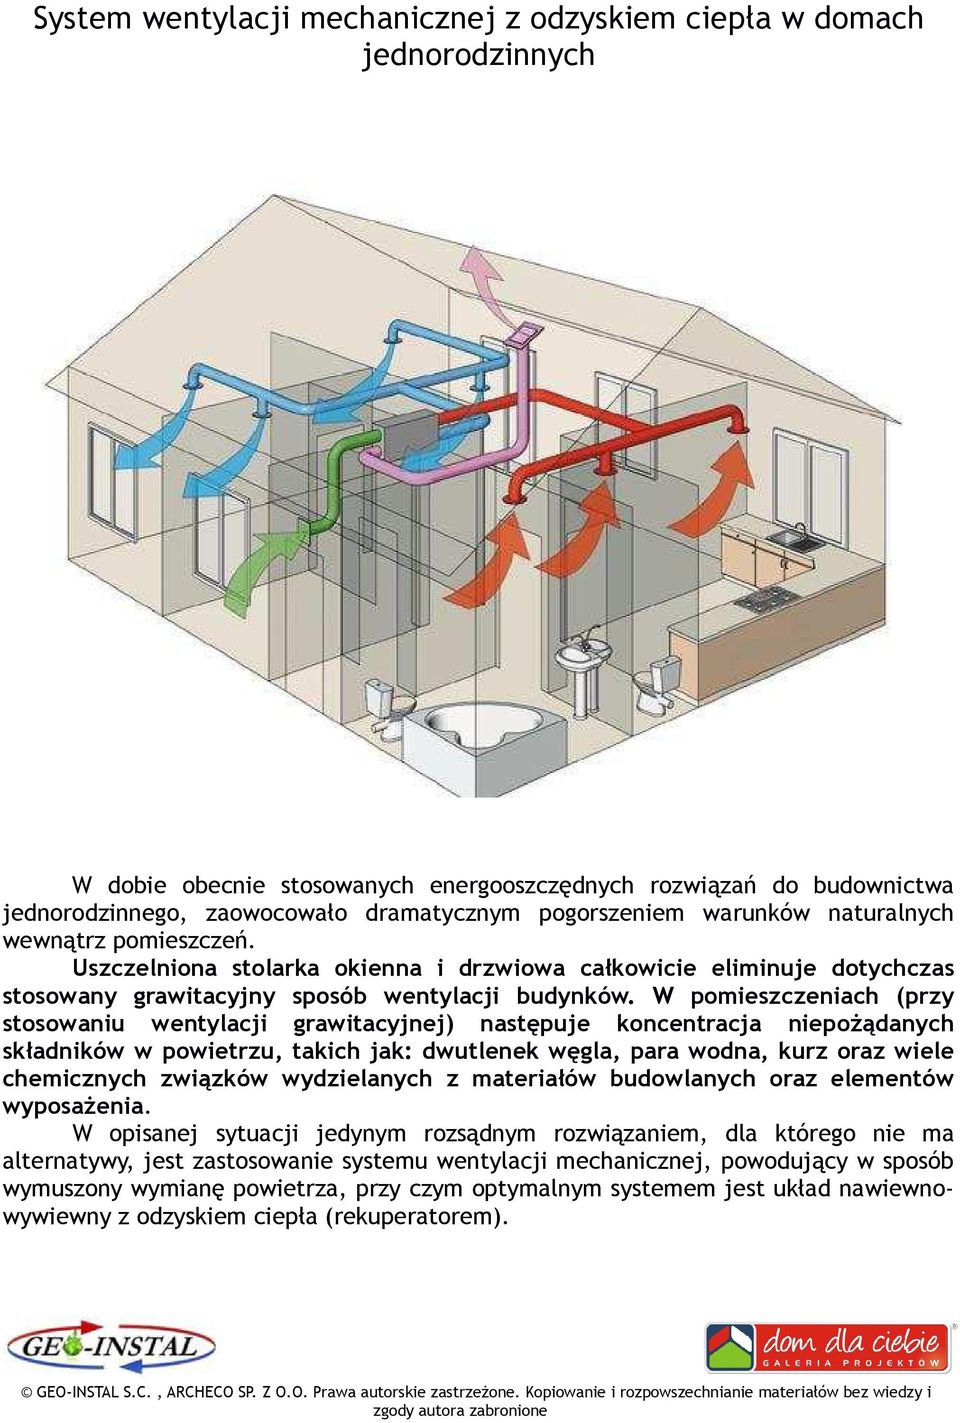 W pomieszczeniach (przy stosowaniu wentylacji grawitacyjnej) następuje koncentracja niepoŝądanych składników w powietrzu, takich jak: dwutlenek węgla, para wodna, kurz oraz wiele chemicznych związków